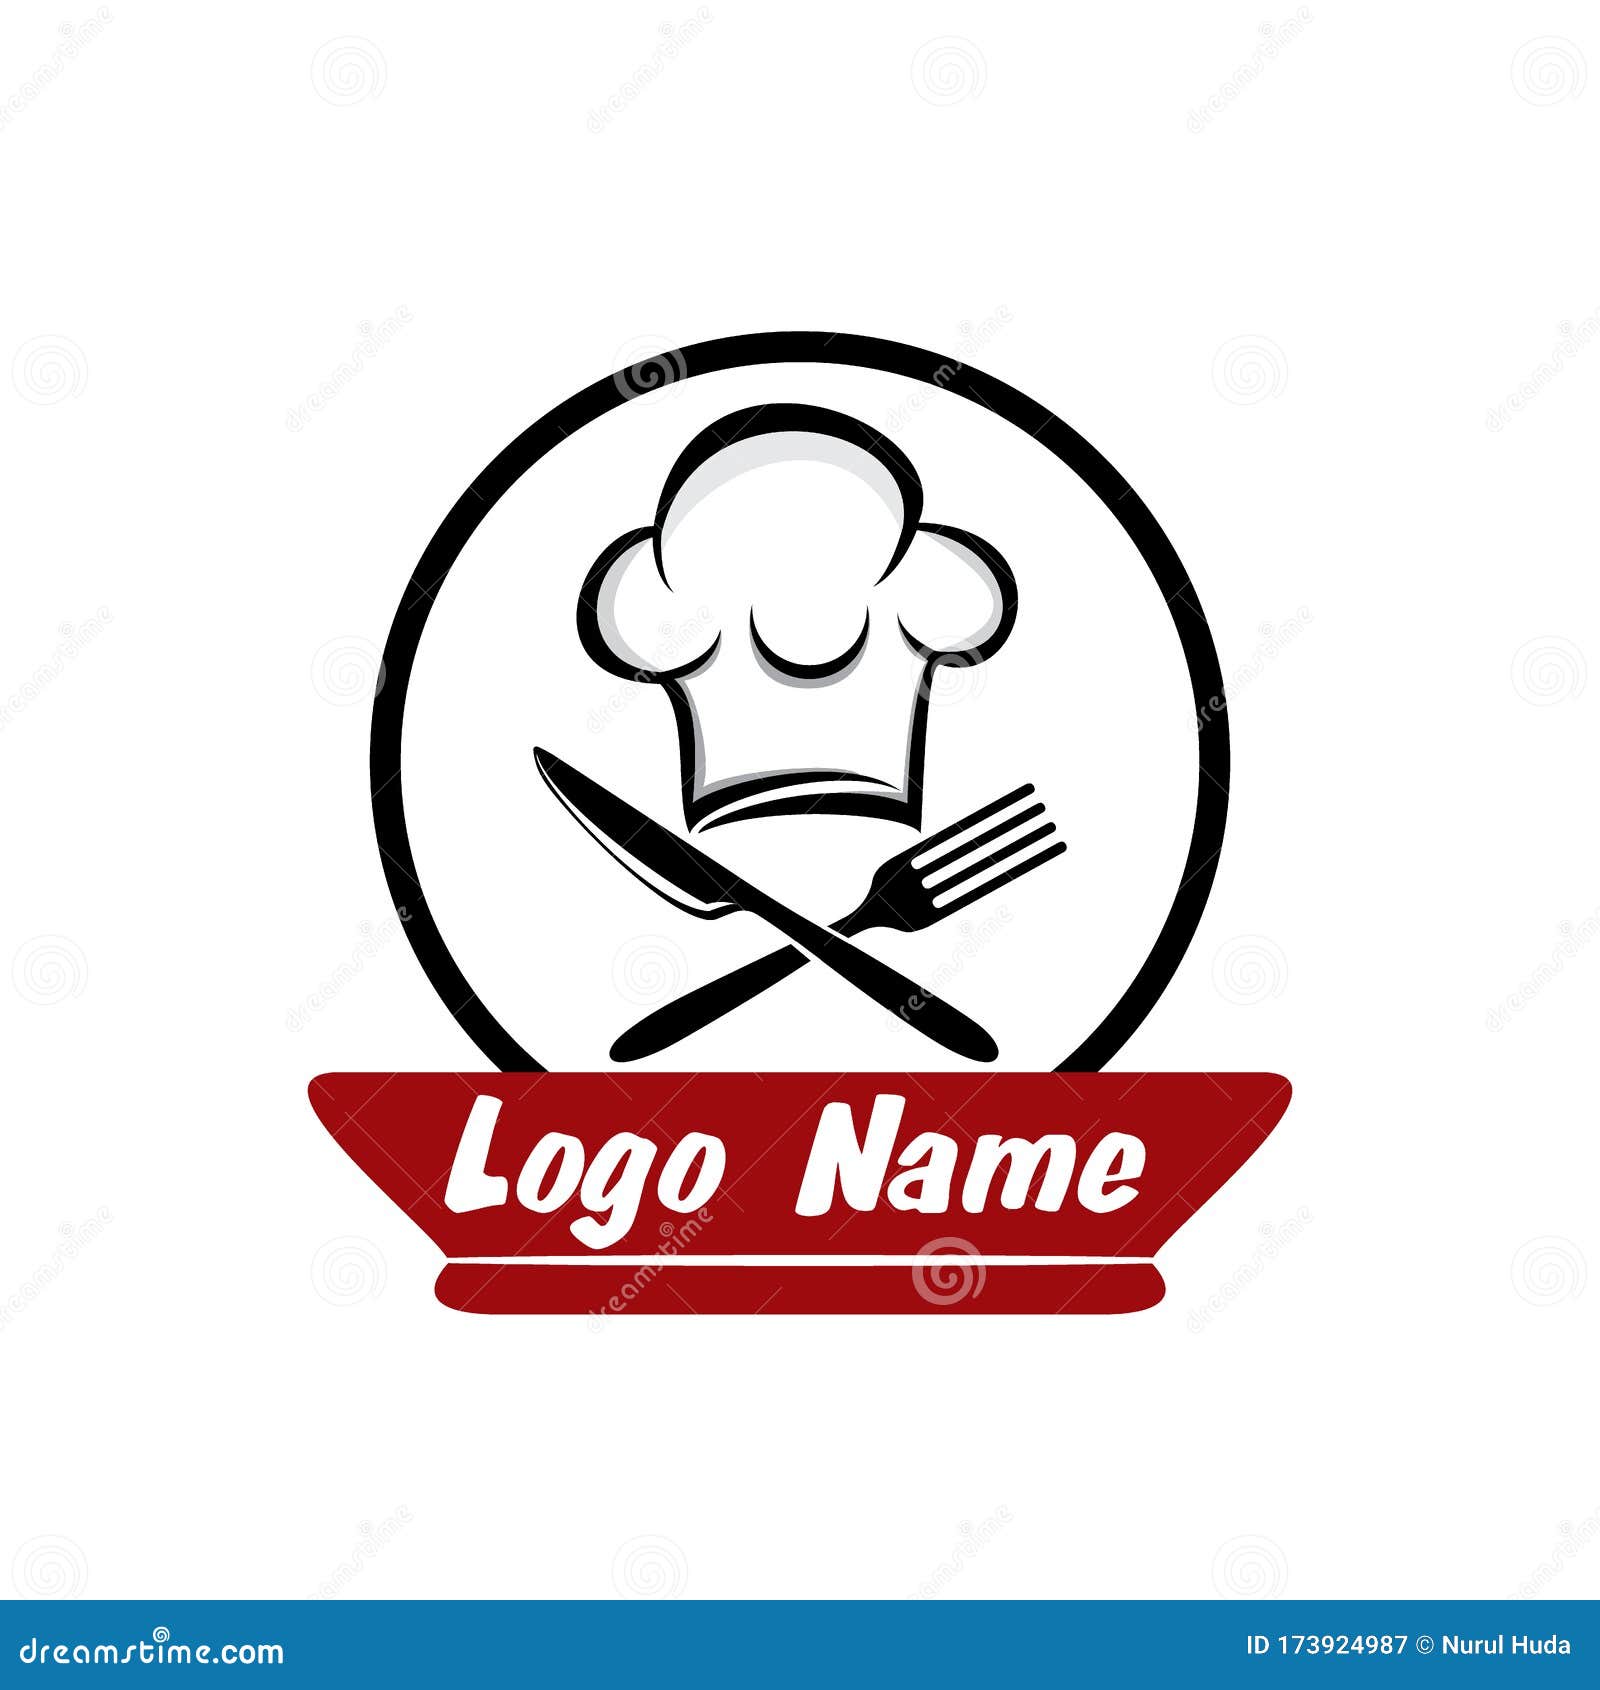 Restaurant Logo Design Vector Template Stock Vector Illustration Of Knife Black 173924987